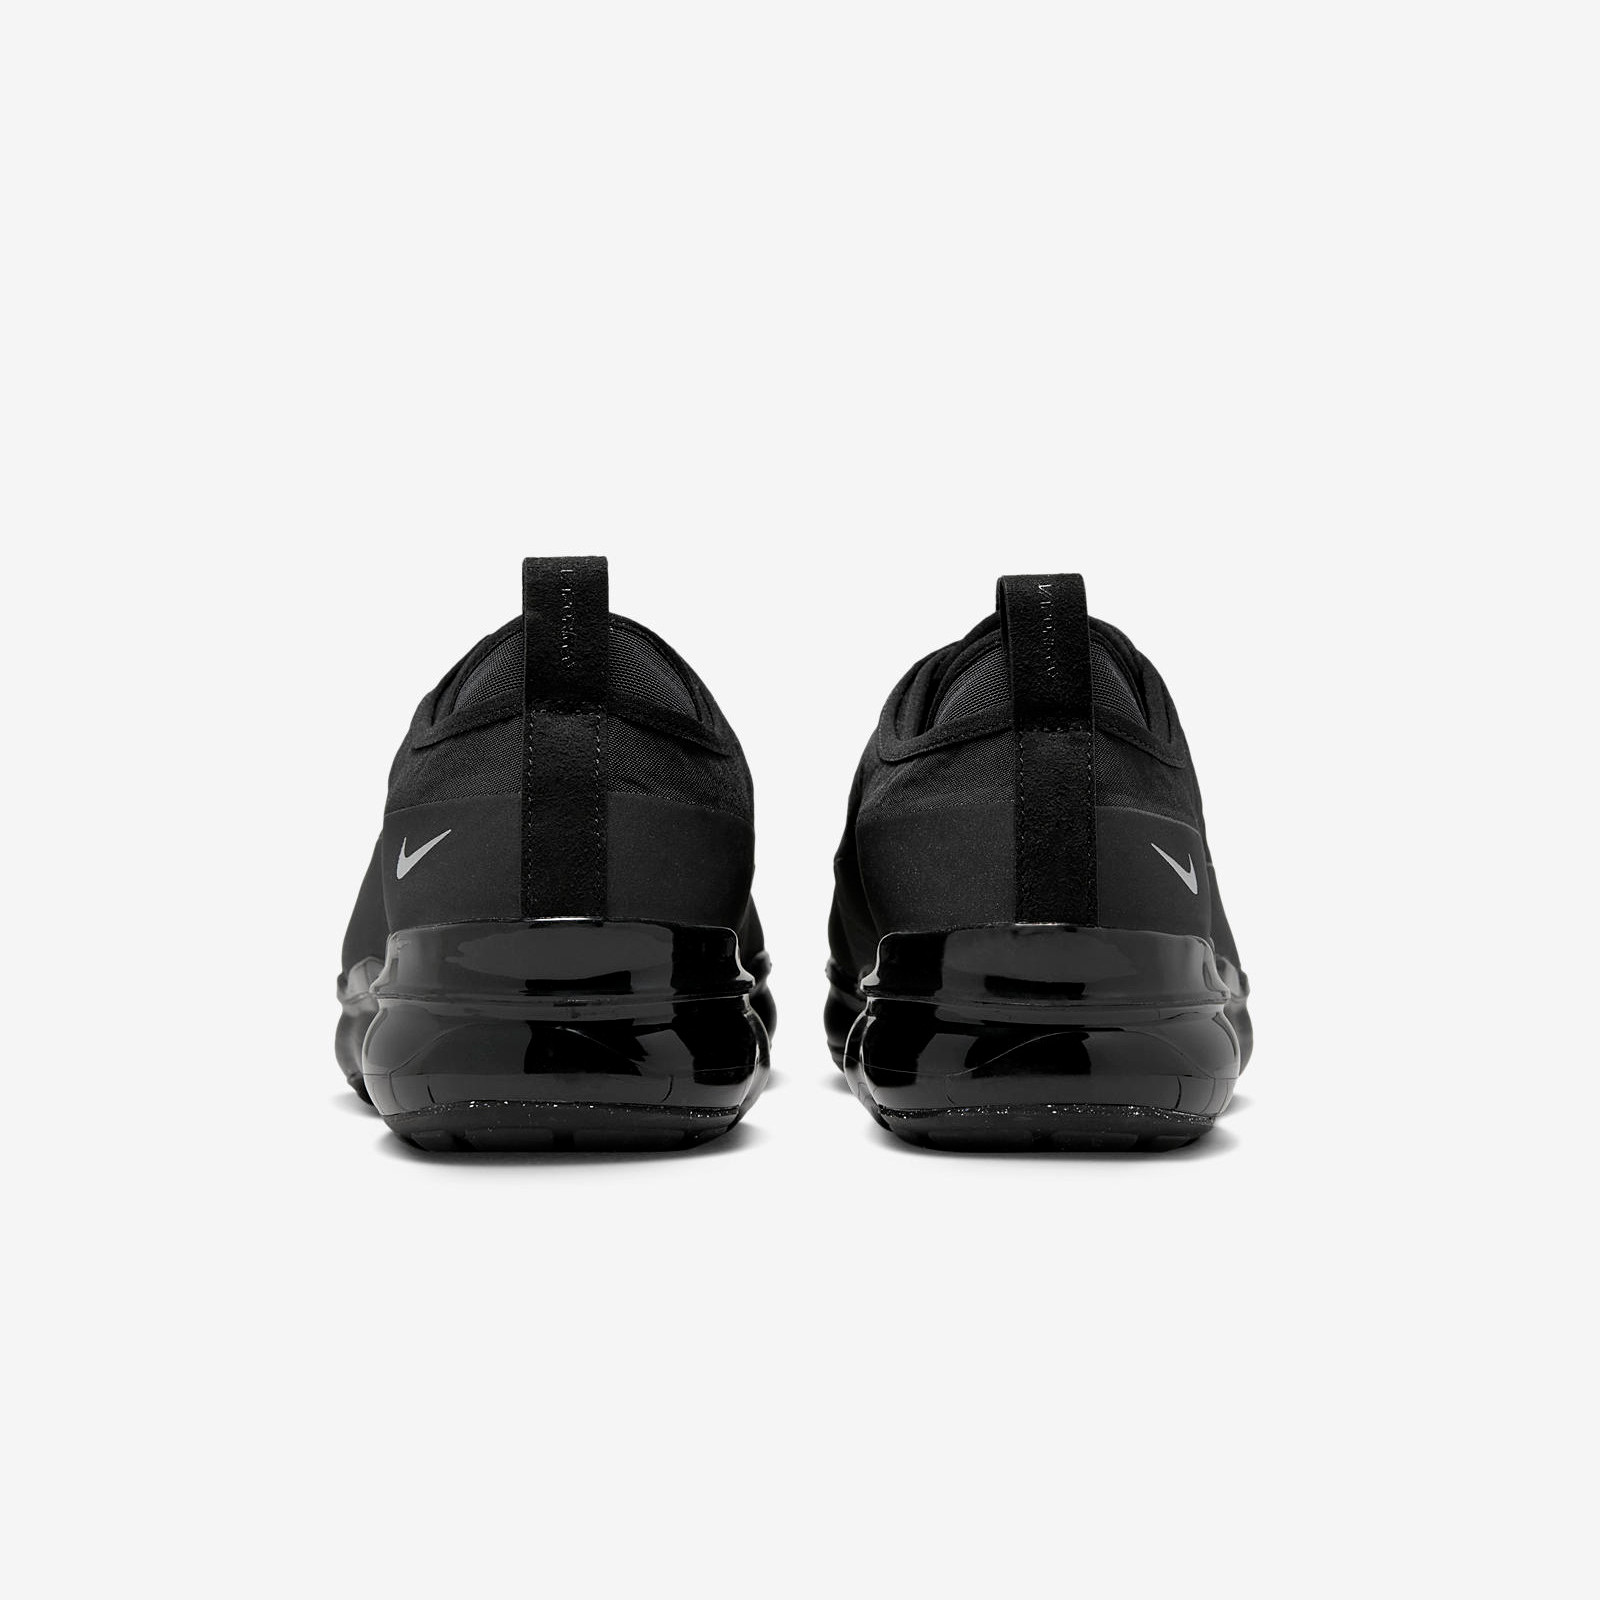 Nike Air VaporMax Moc Roam
« Black »